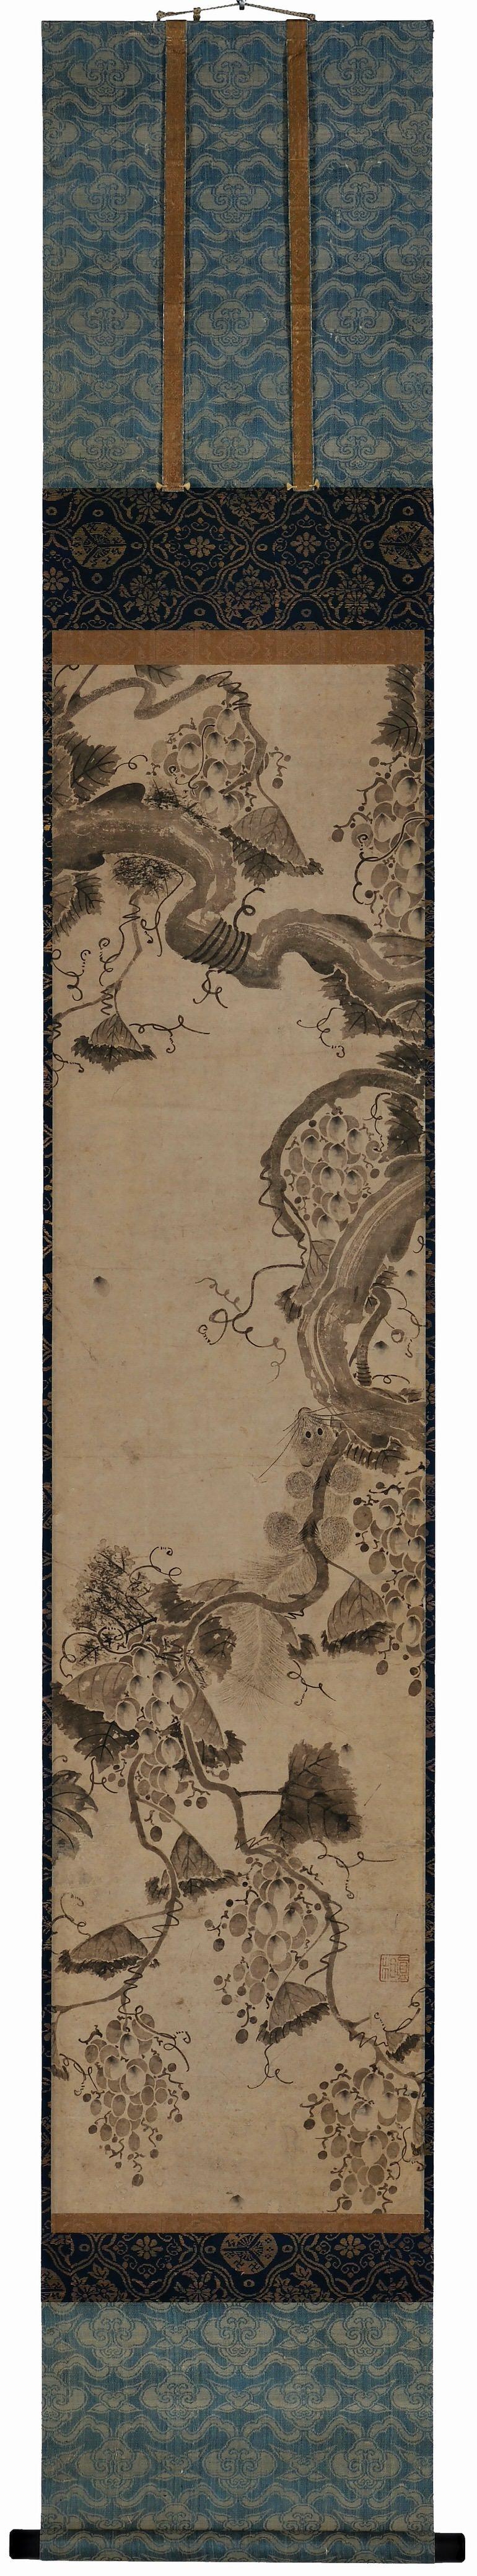 Anonyme. Corée, XVIIe siècle. Période Joseon.

Parchemin suspendu. Encre sur papier.

Sceau : Shinso

Dimensions :

Parchemin : H. 200 cm x L. 31 cm (79